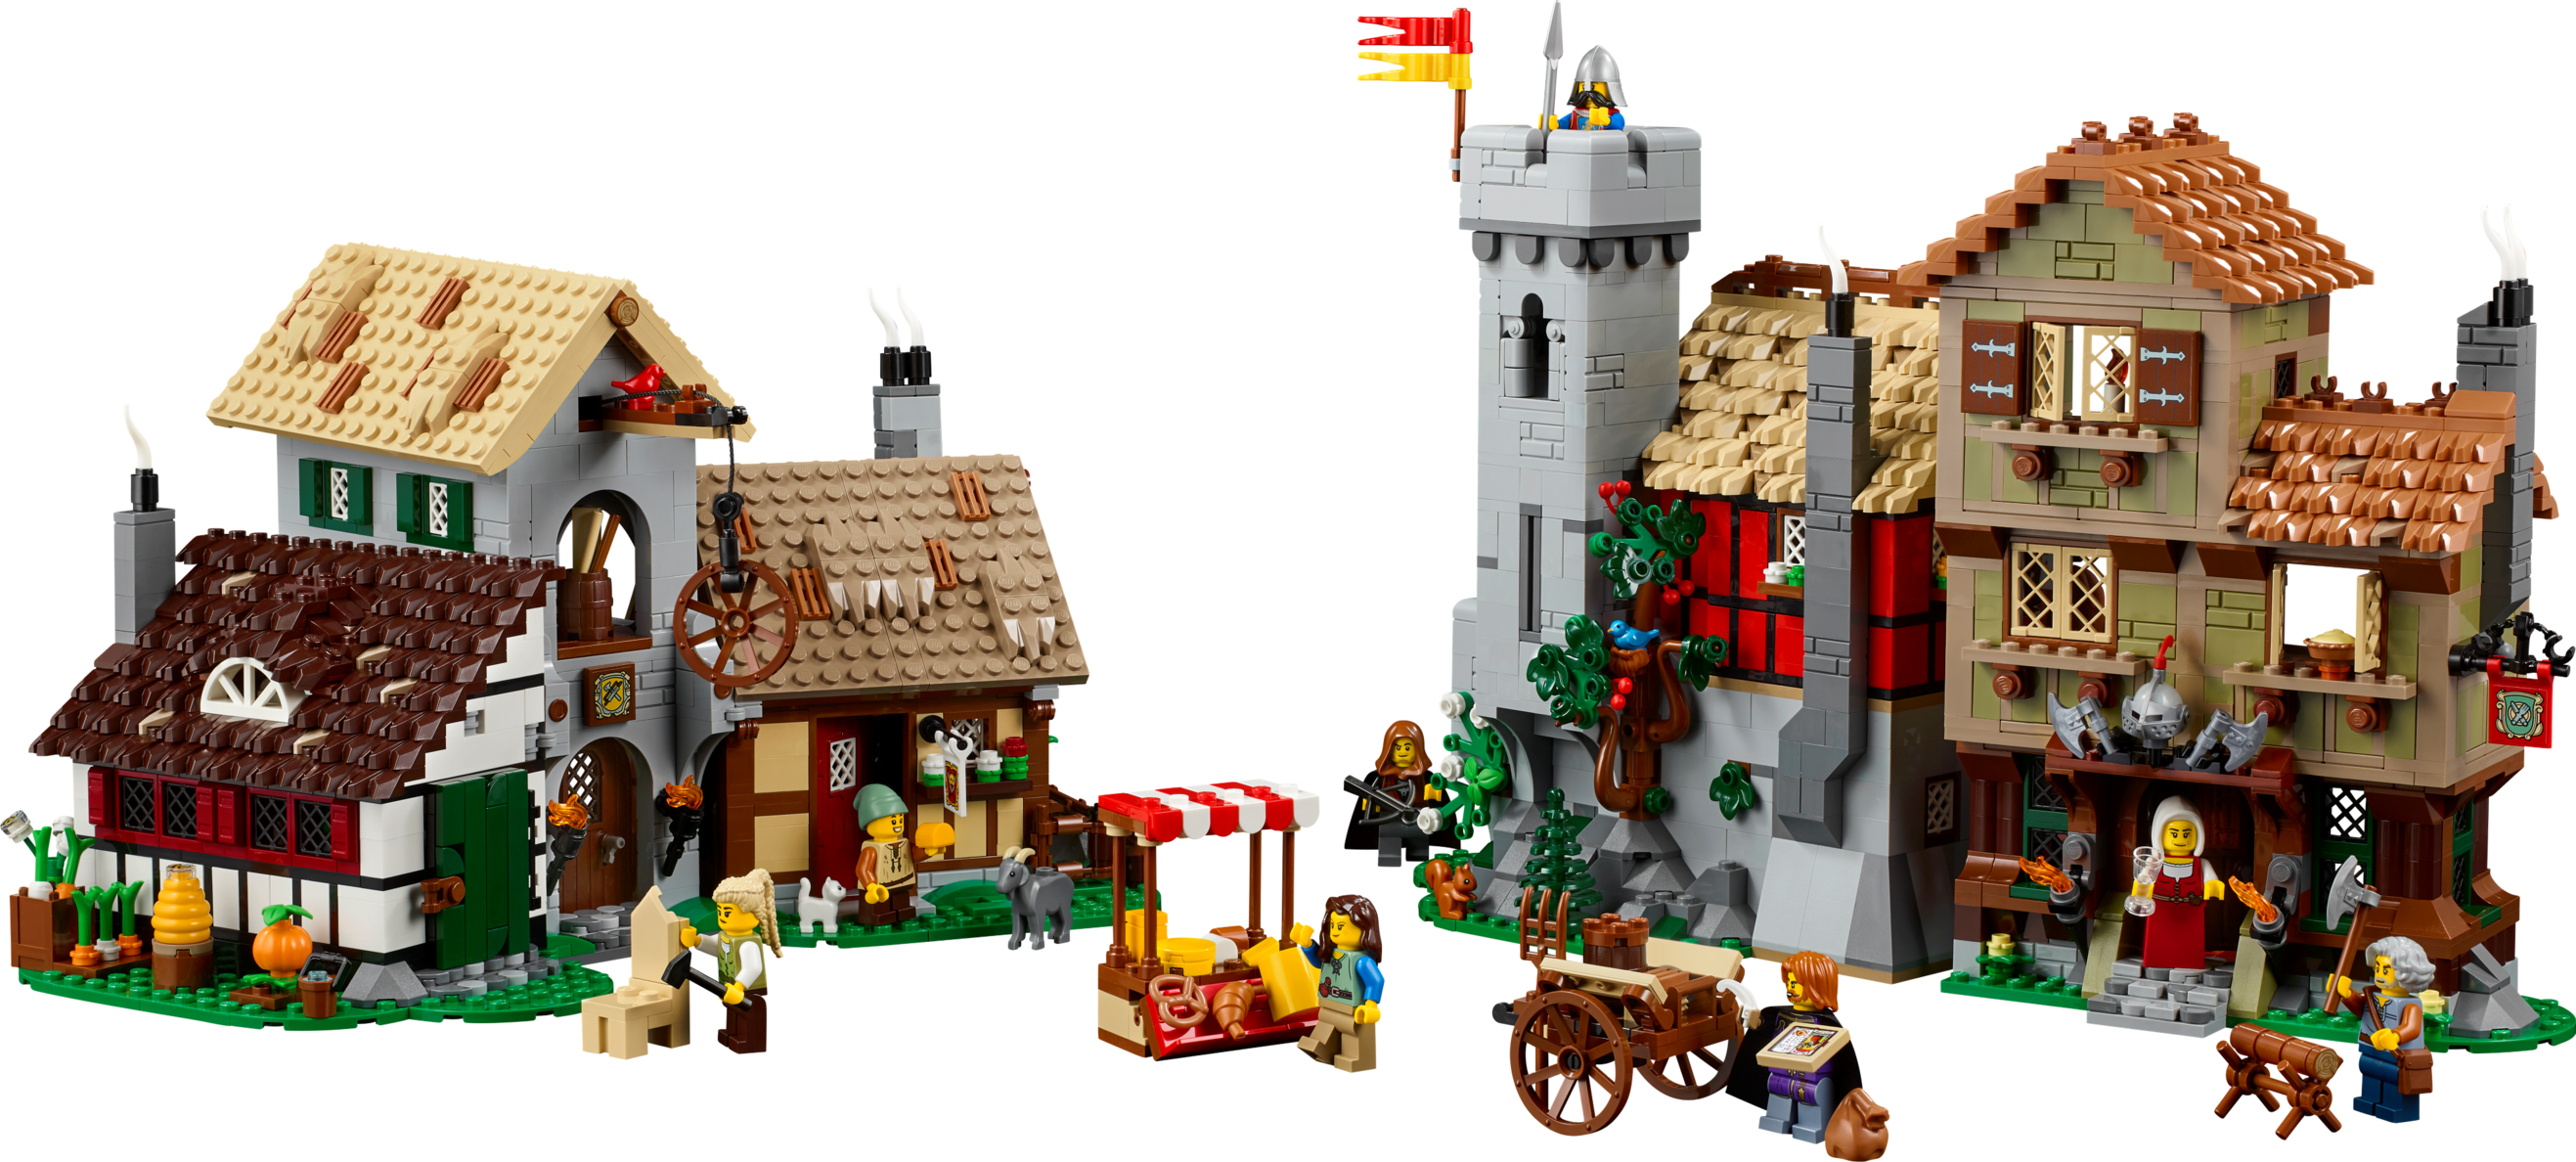 Mittelalterlicher Stadtplatz für 229,99€ in Lego